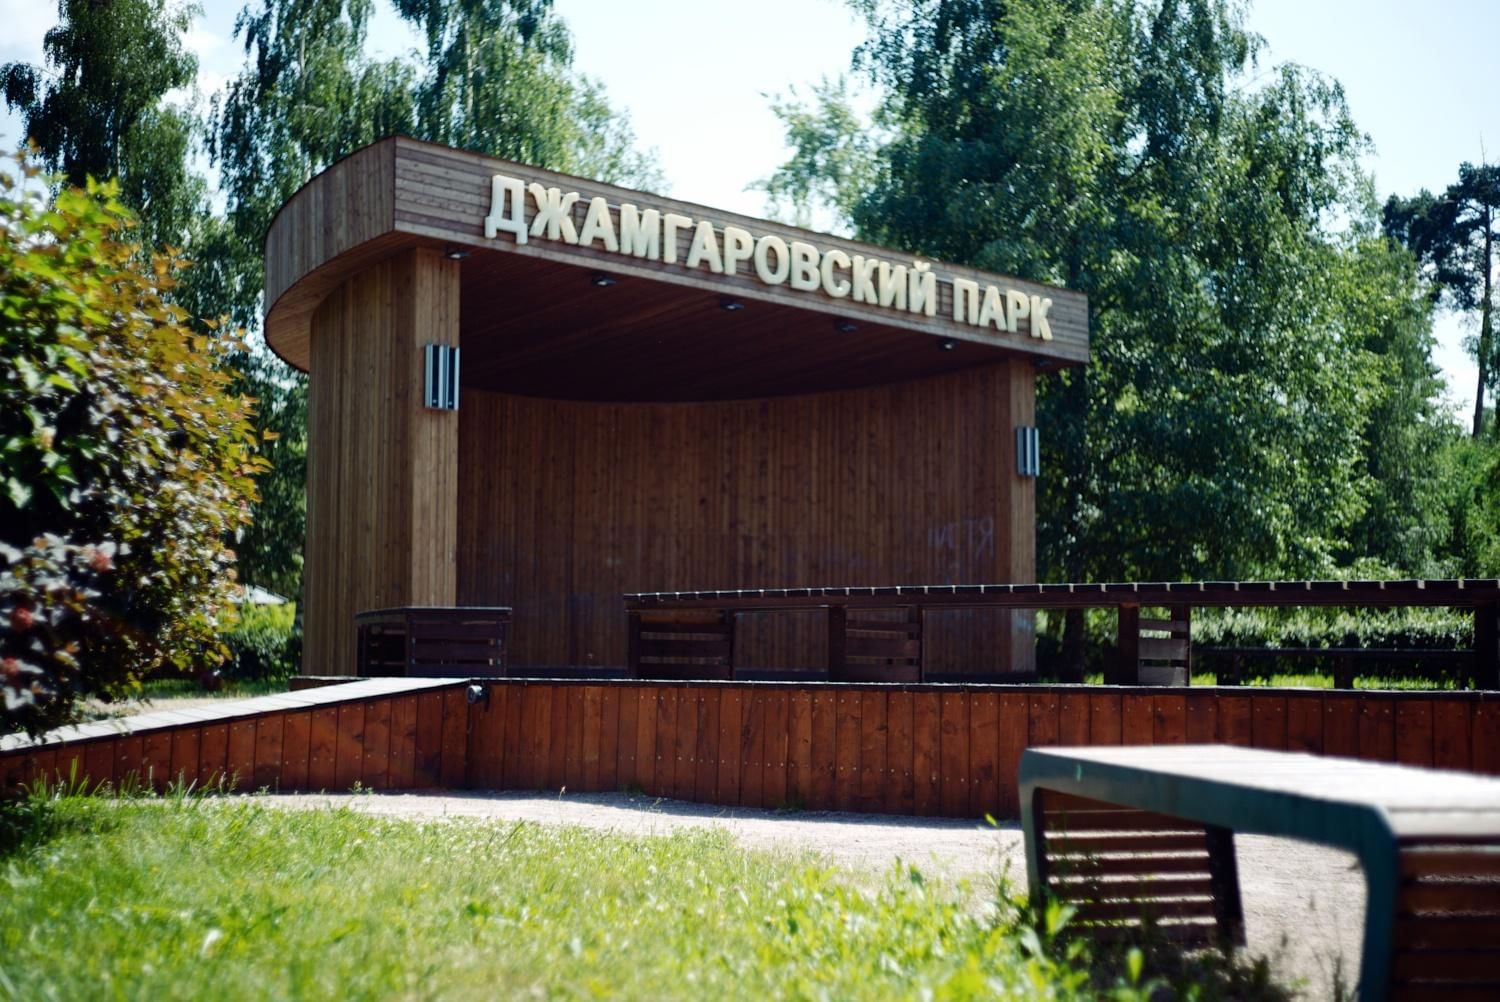 джамгаровский парк